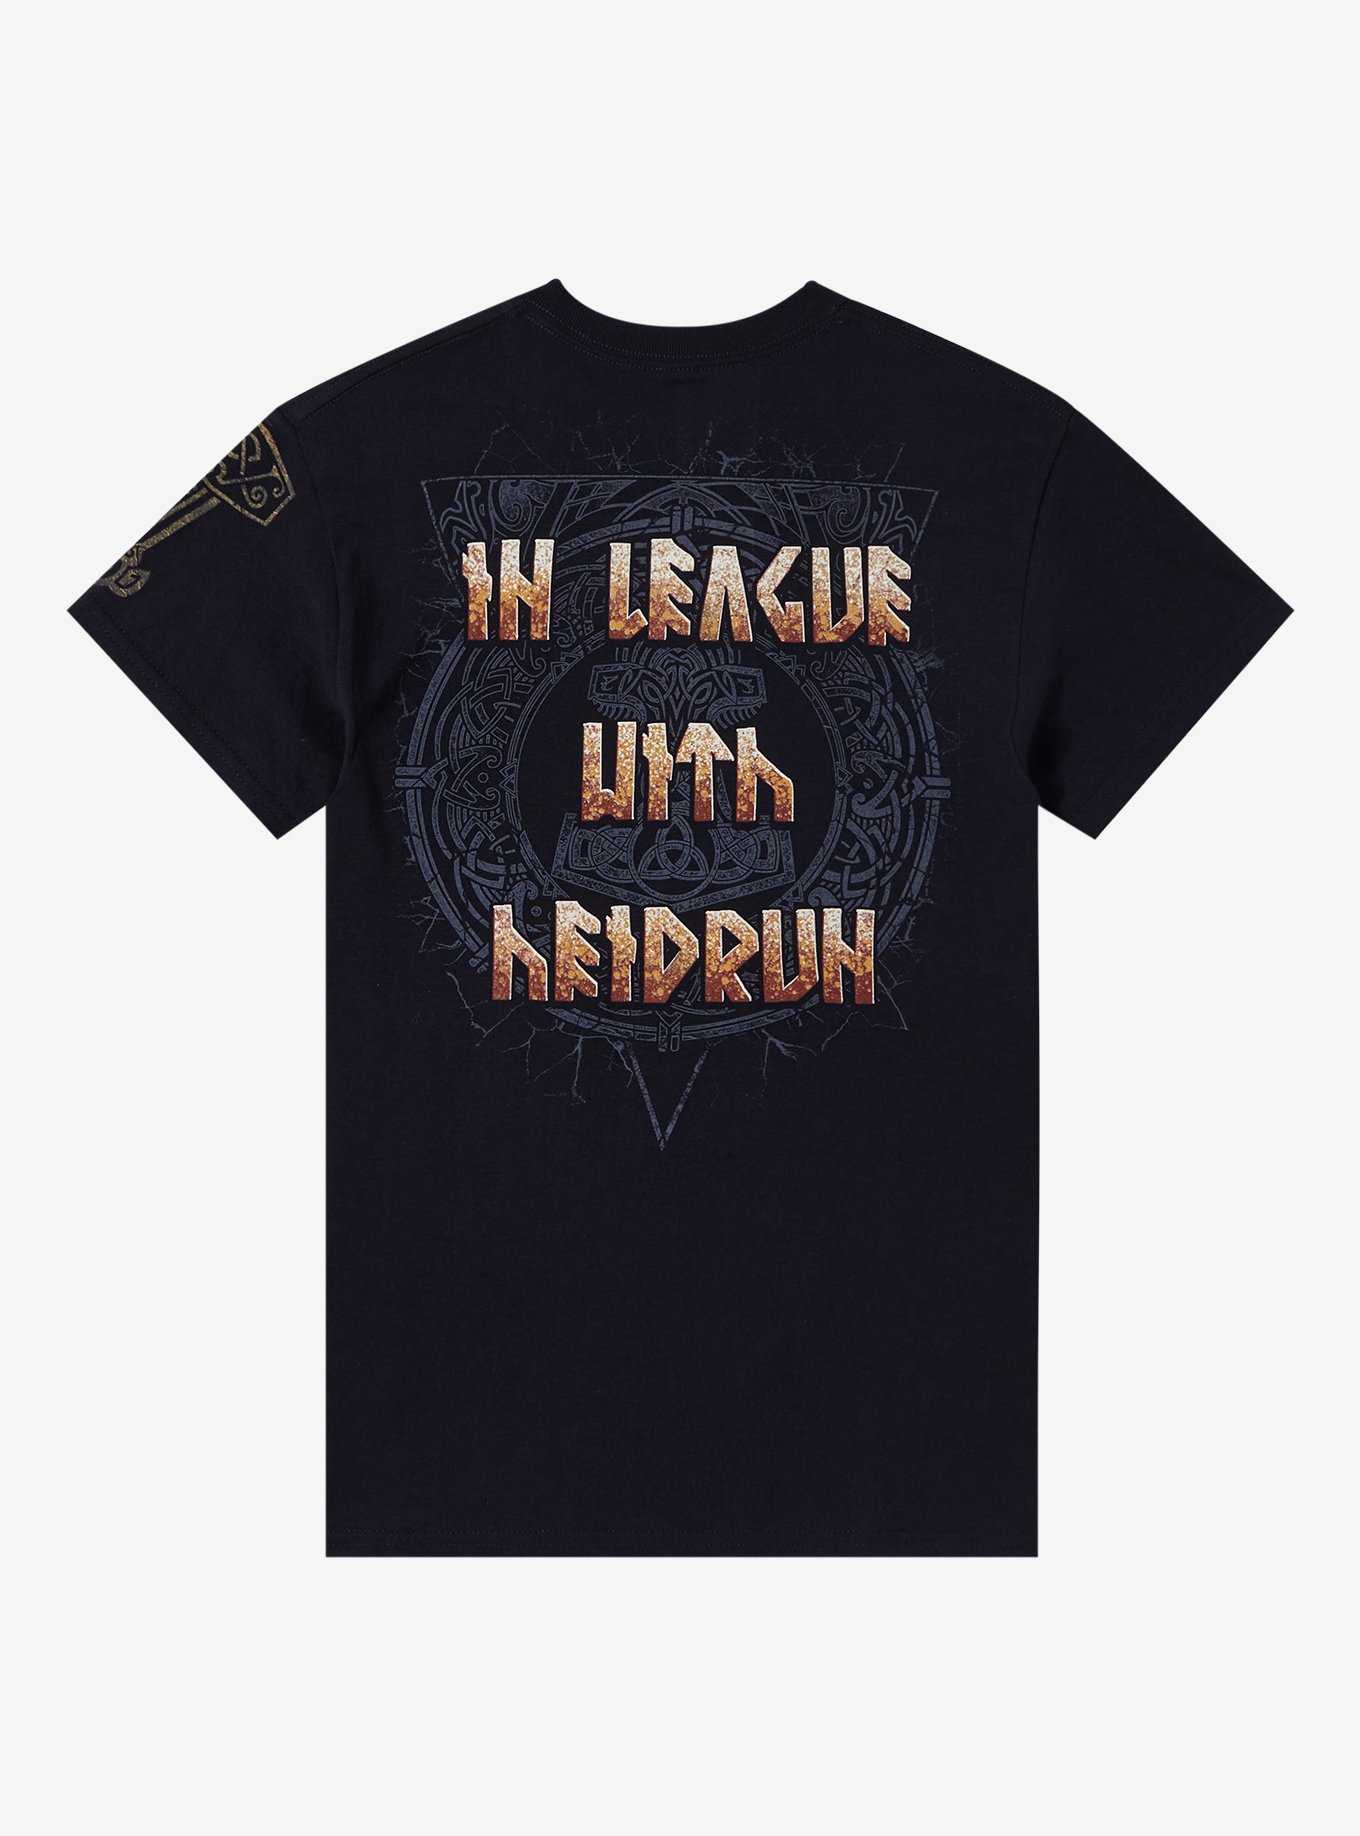 Amon Amarth Heidrun Boyfriend Fit Girls T-Shirt, , hi-res